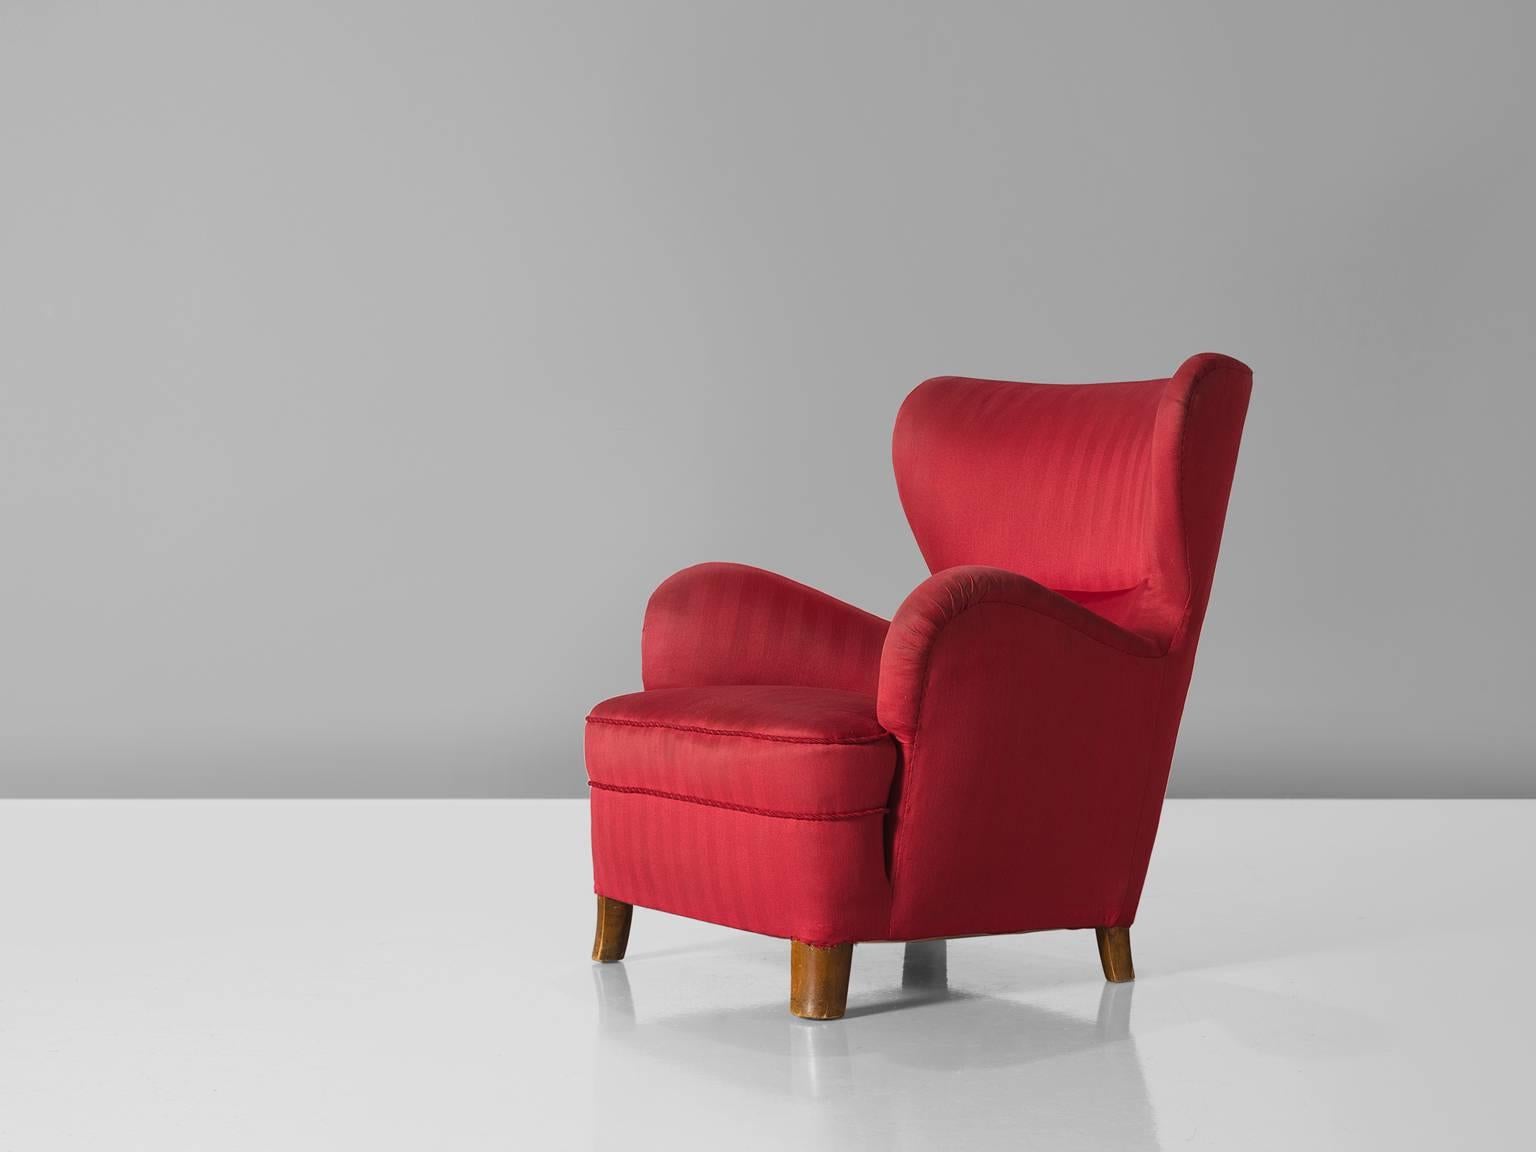 Sessel, roter Stoff, Buche, Dänemark, 1950er Jahre

Dieser schöne und bequeme dänische Stuhl ist mit kleinen Flügeln und einer geschwungenen Armlehne ausgestattet. Dank der üppigen Armlehnen erhält der Stuhl eine charakteristische, lustige Form.